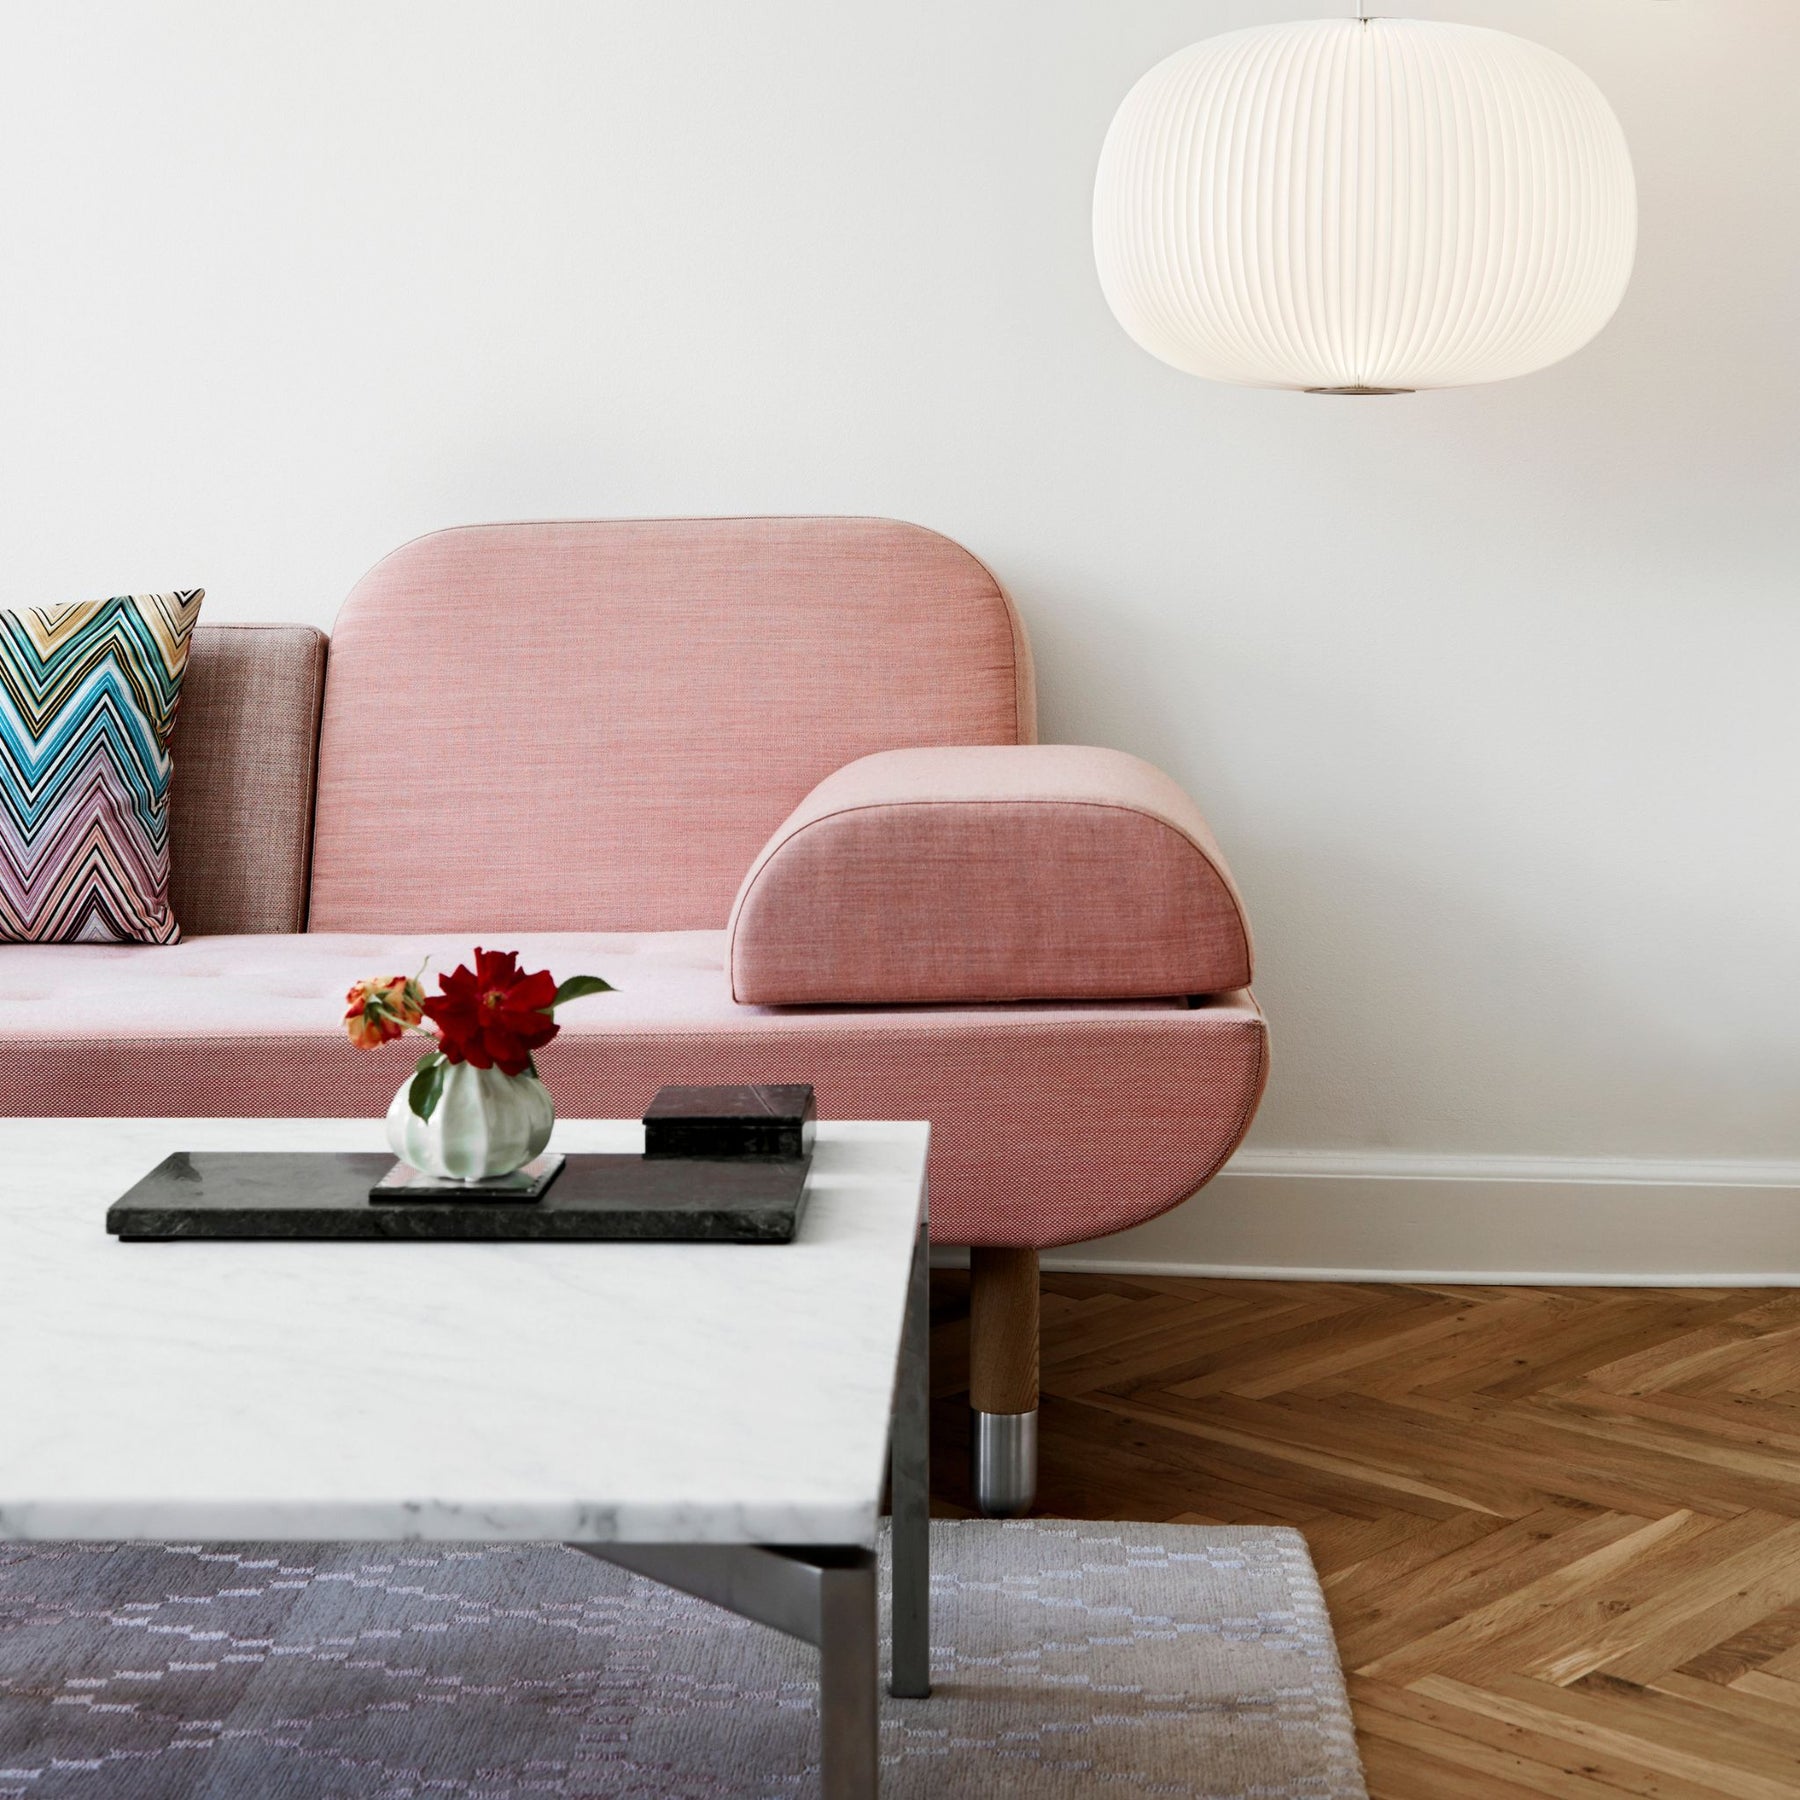 Le Klint Lamella Pendant 1 in Danish Living Room with Pink Wool Sofa, Marble Coffee Table, Herringbone Floors